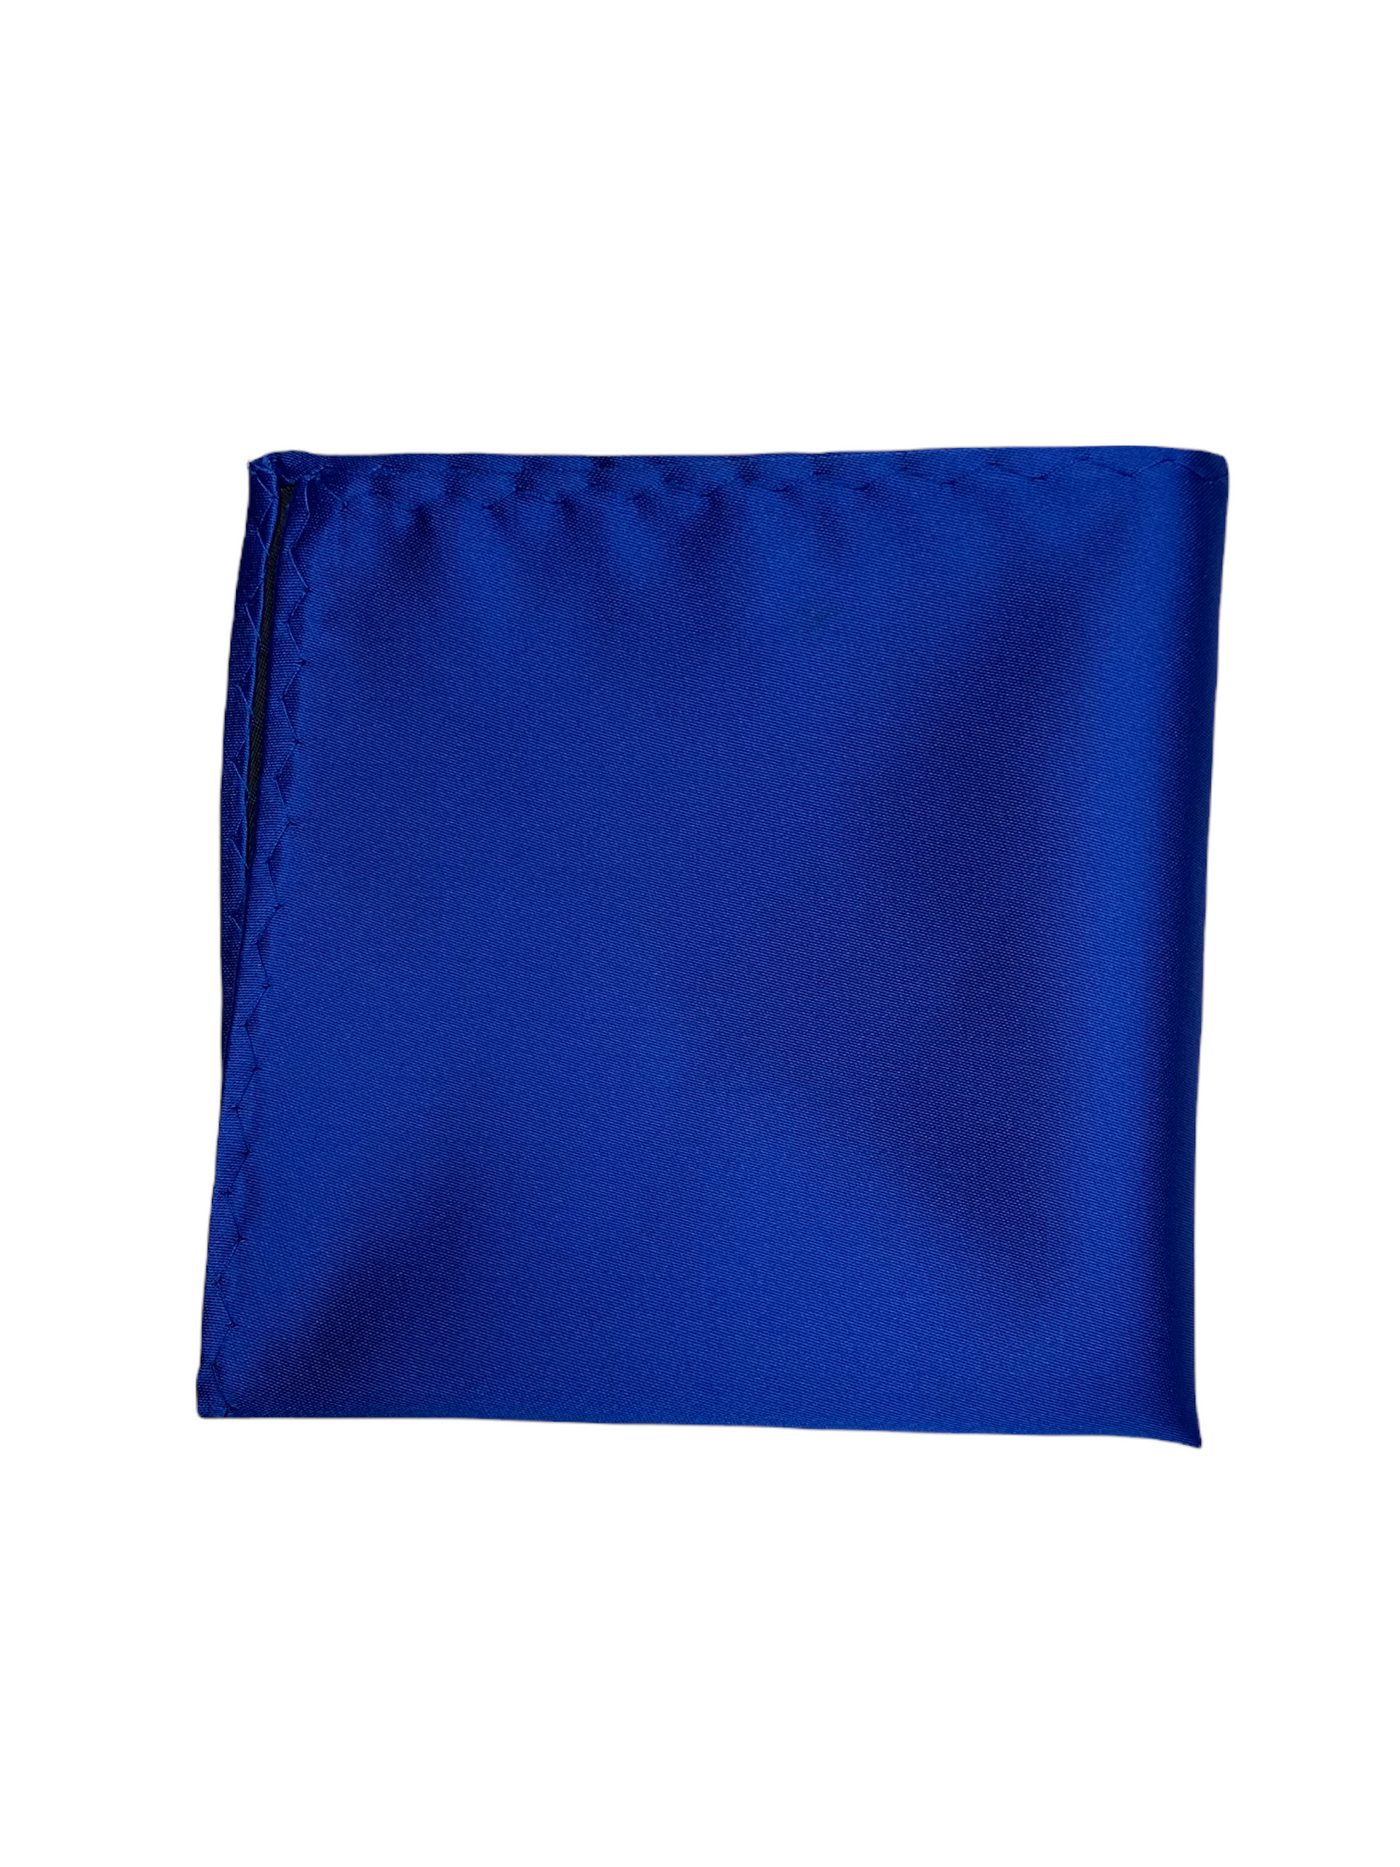 Mouchoir de poche satiné bleu royal